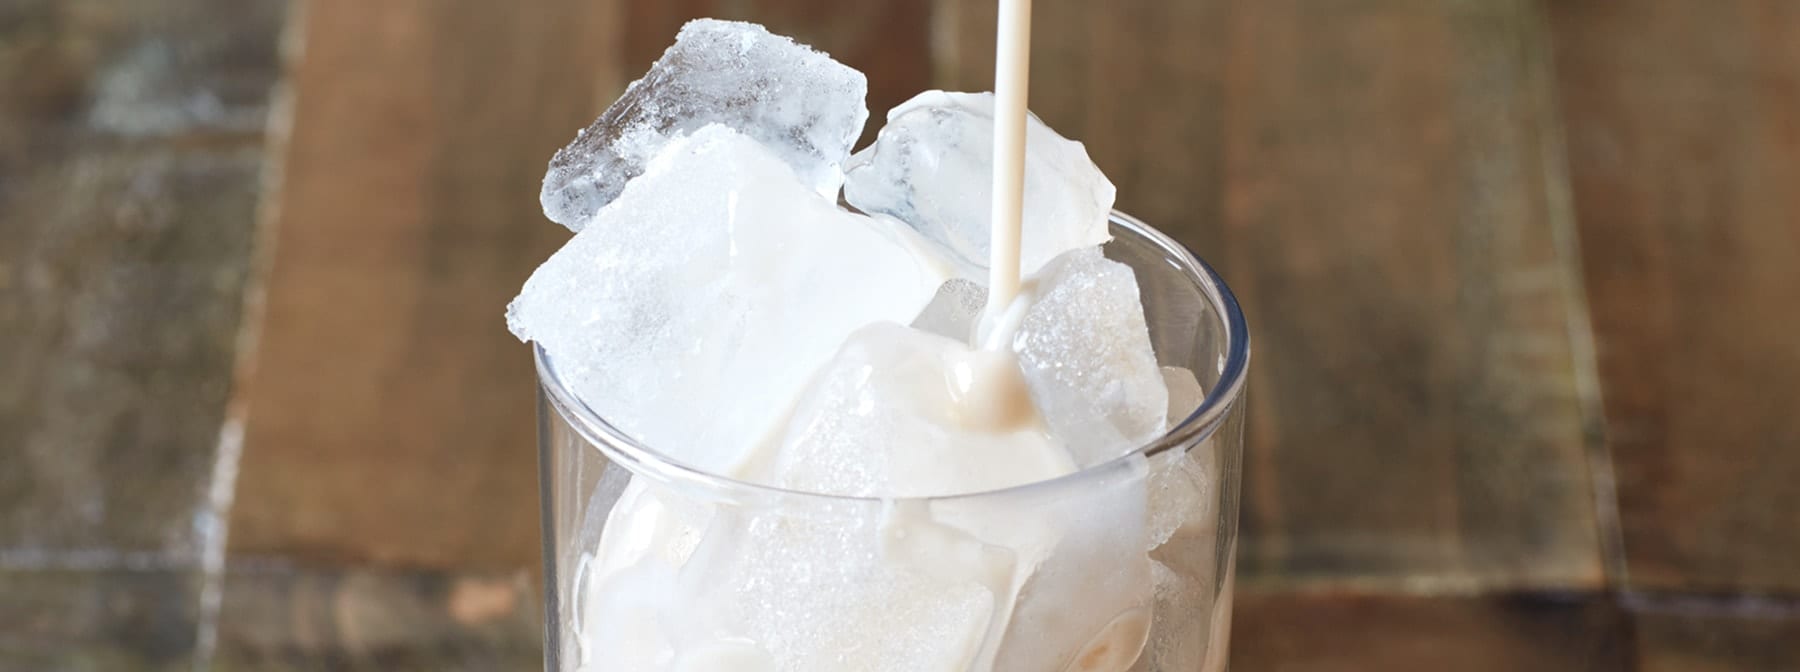 vanilla protein shake